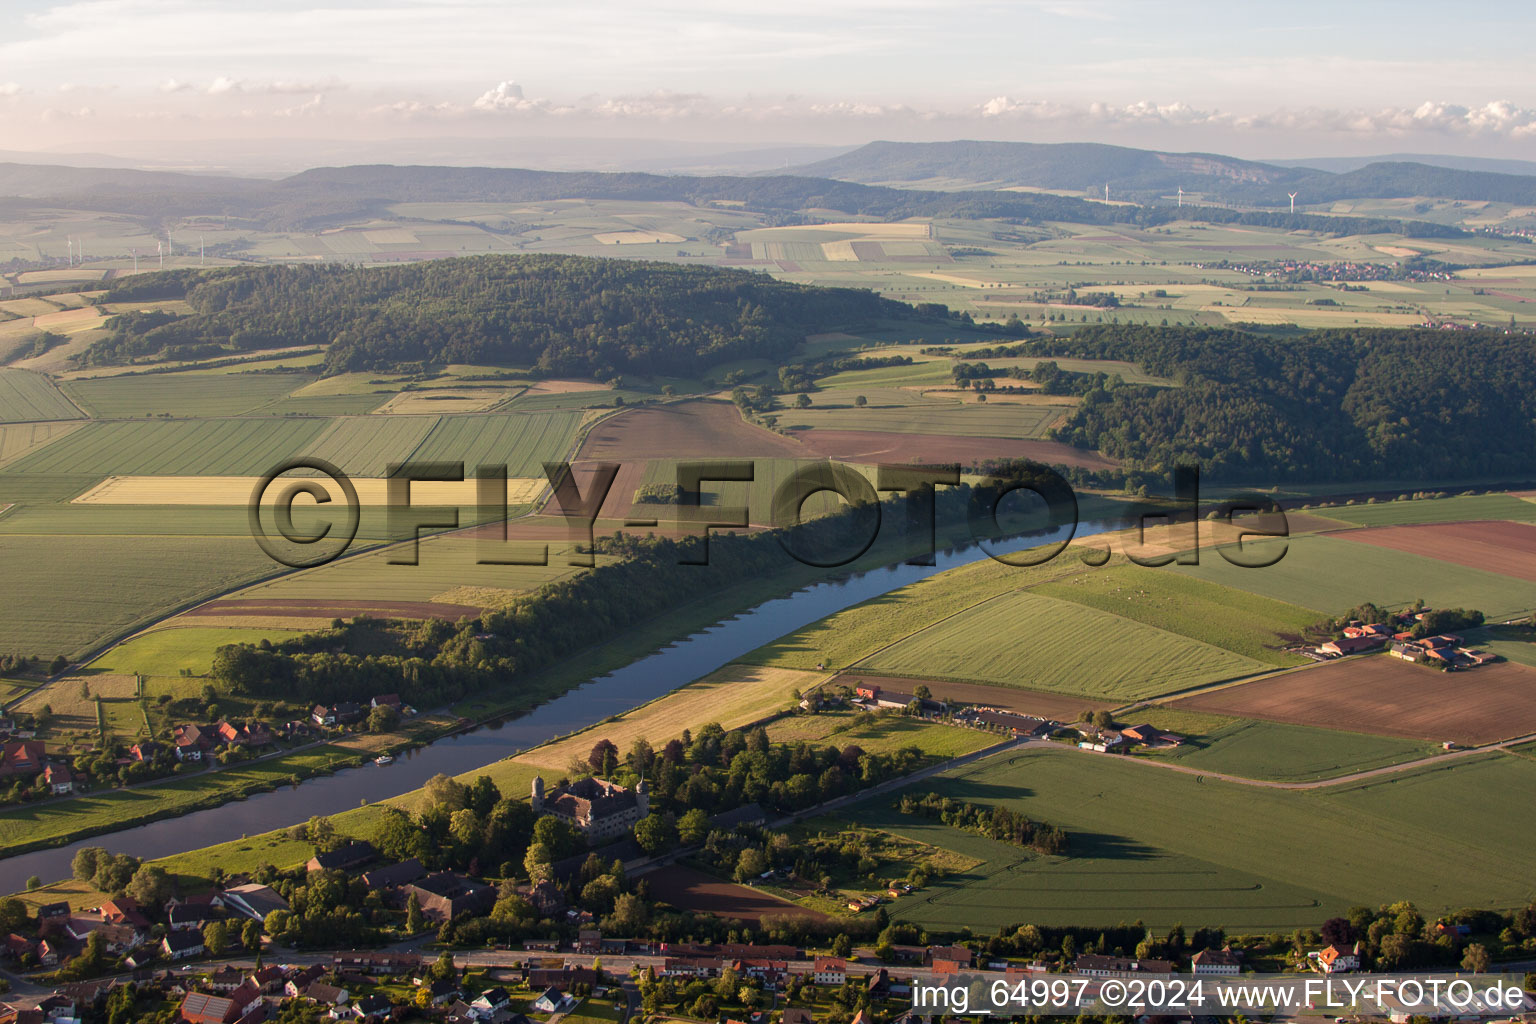 Vue aérienne de Zones riveraines de la Weser dans le district de Daspe à Hehlen dans le département Basse-Saxe, Allemagne